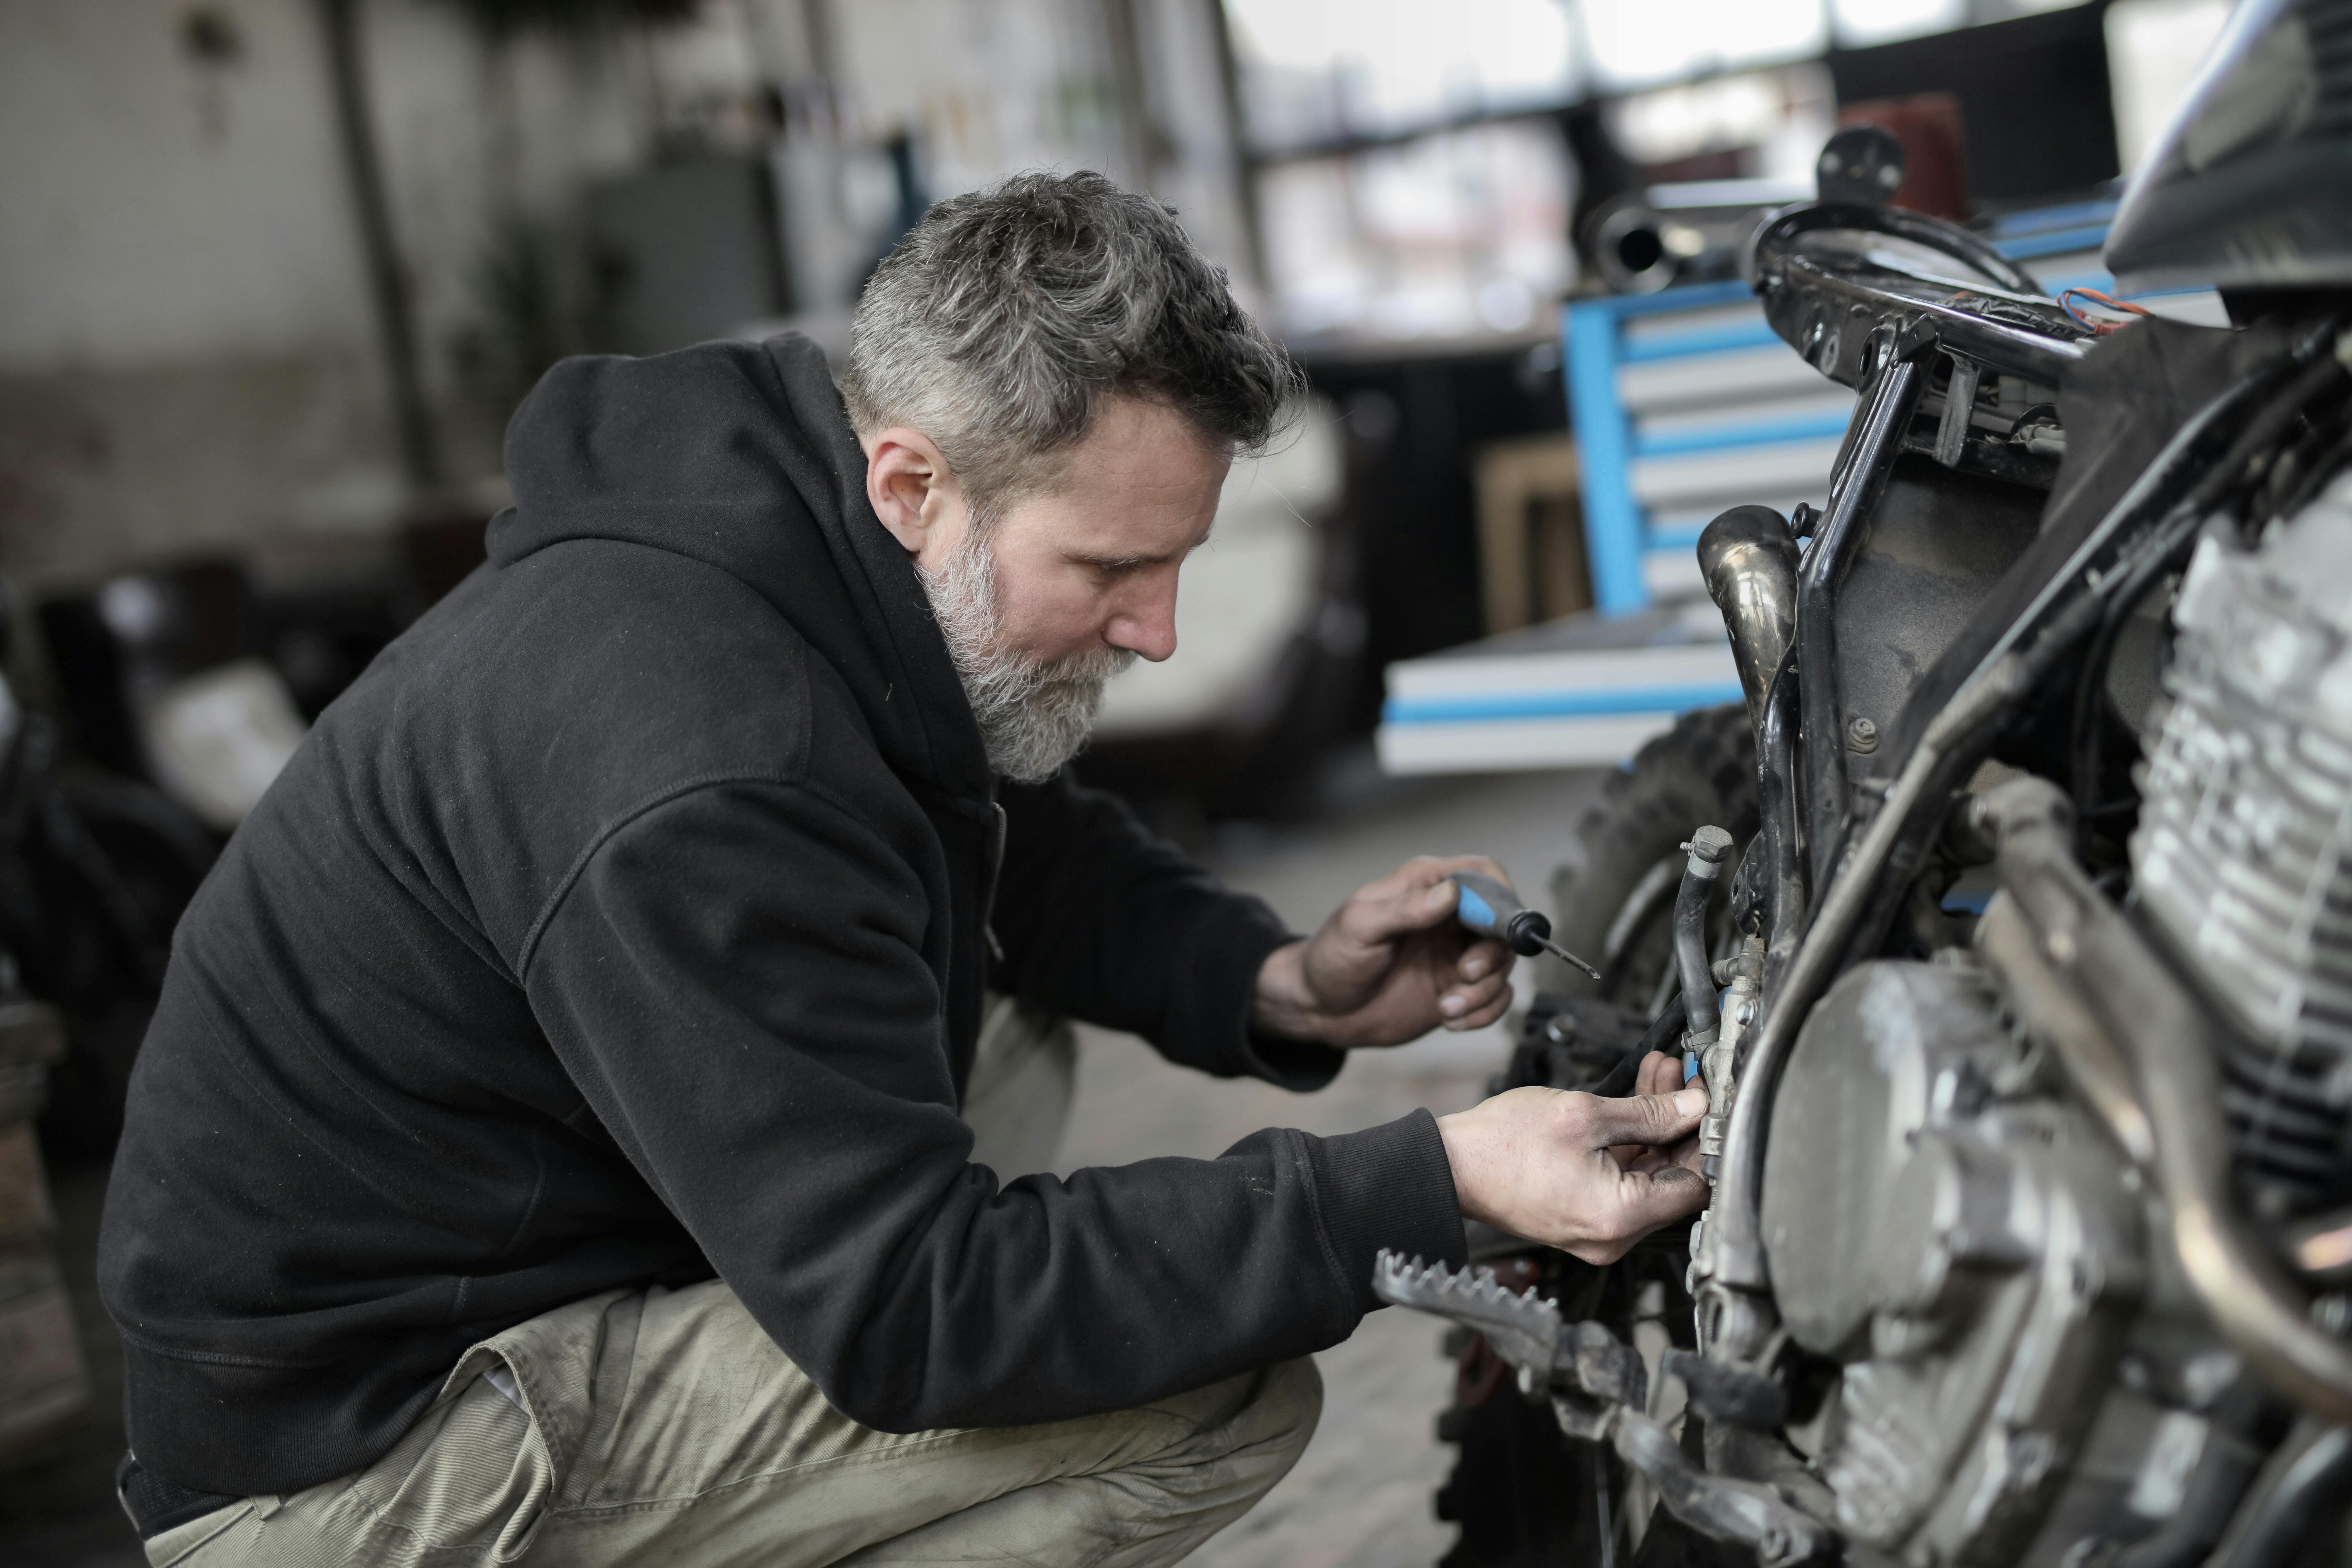 Un homme en train de réparer une moto | Source : Pexels